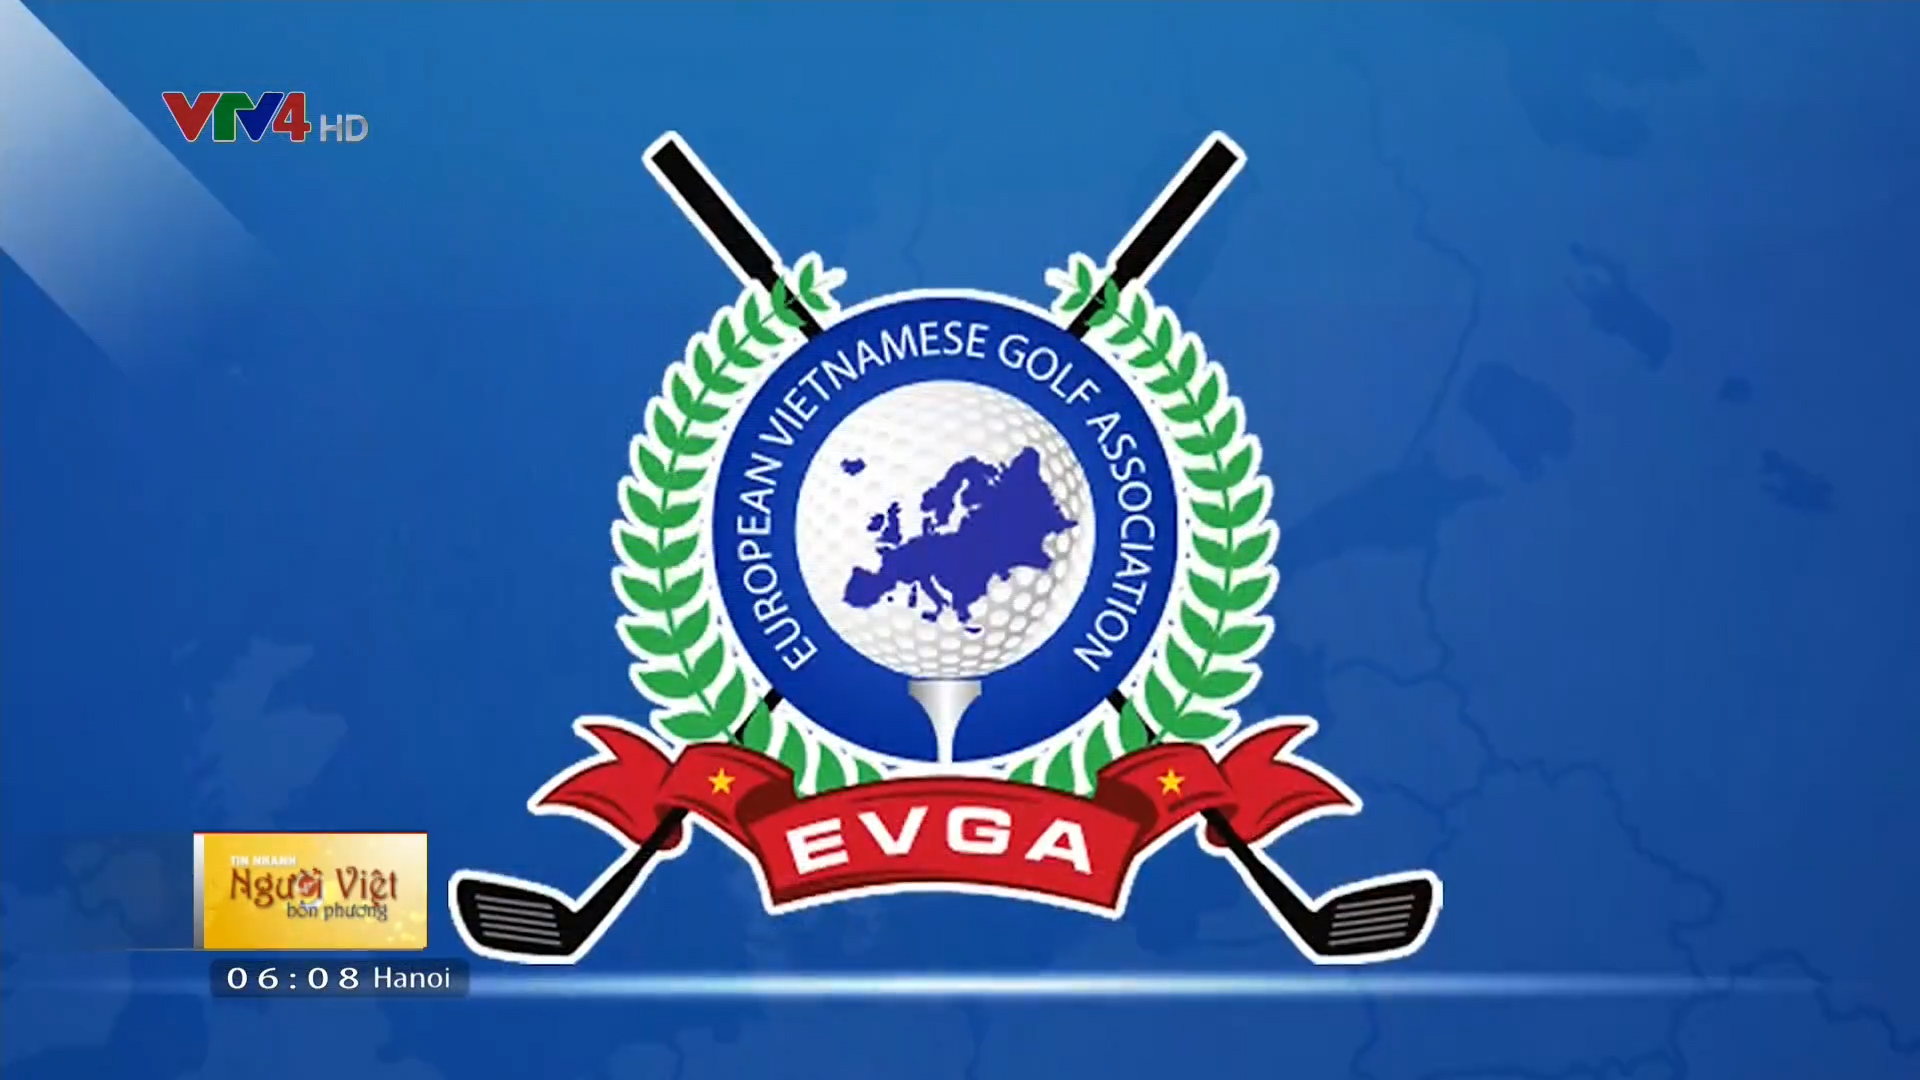 Khởi động giải Golf cho người Việt tại châu Âu